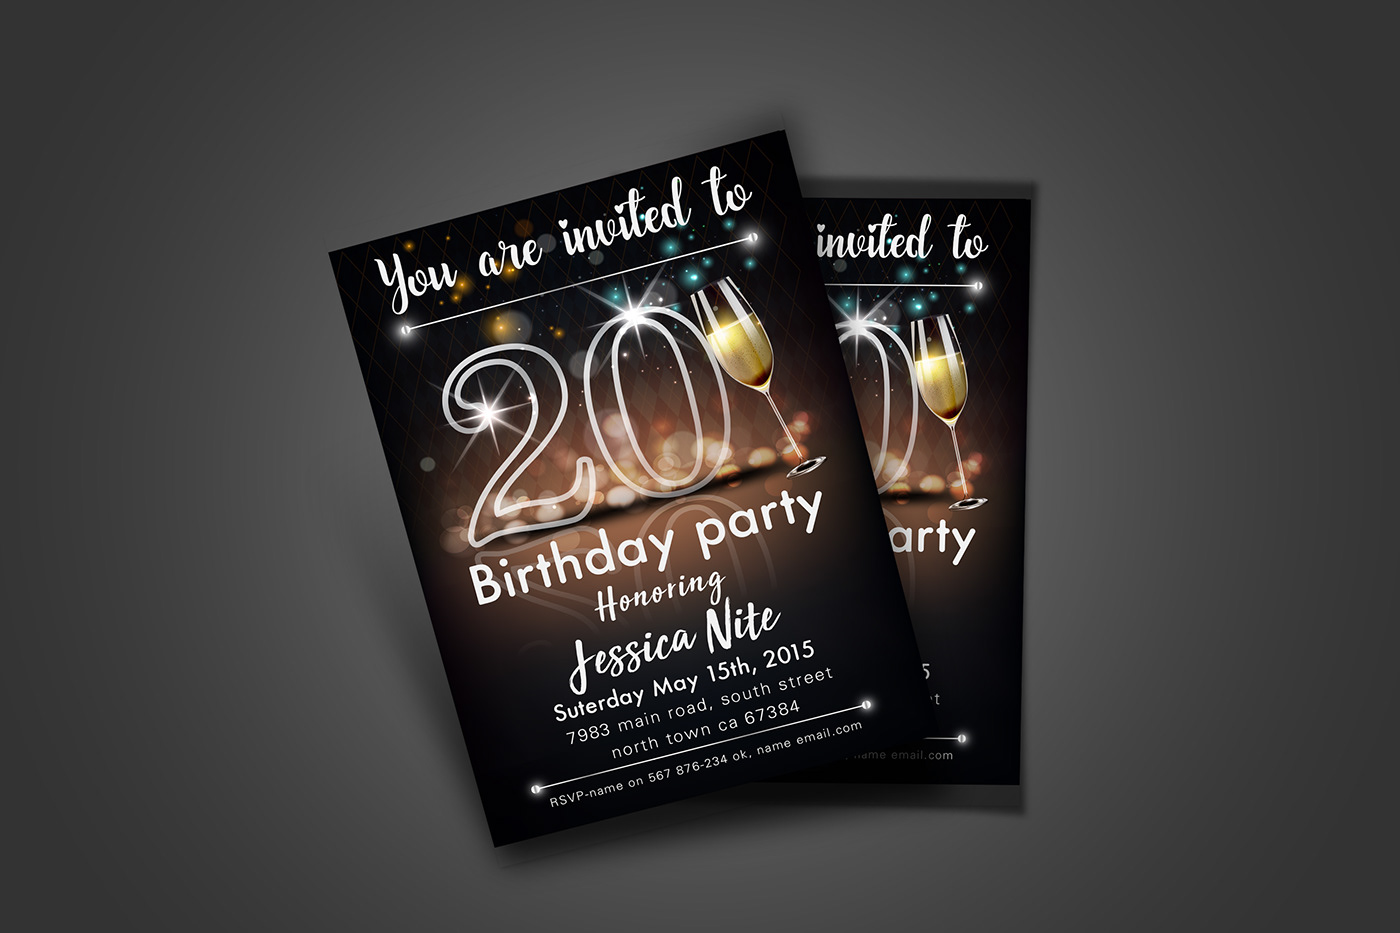 #invitation   #invitation card #save the date #Birthday Invitation Template #birthday party #party Flyer #invitation design #free invitations card #free template #invitation card design